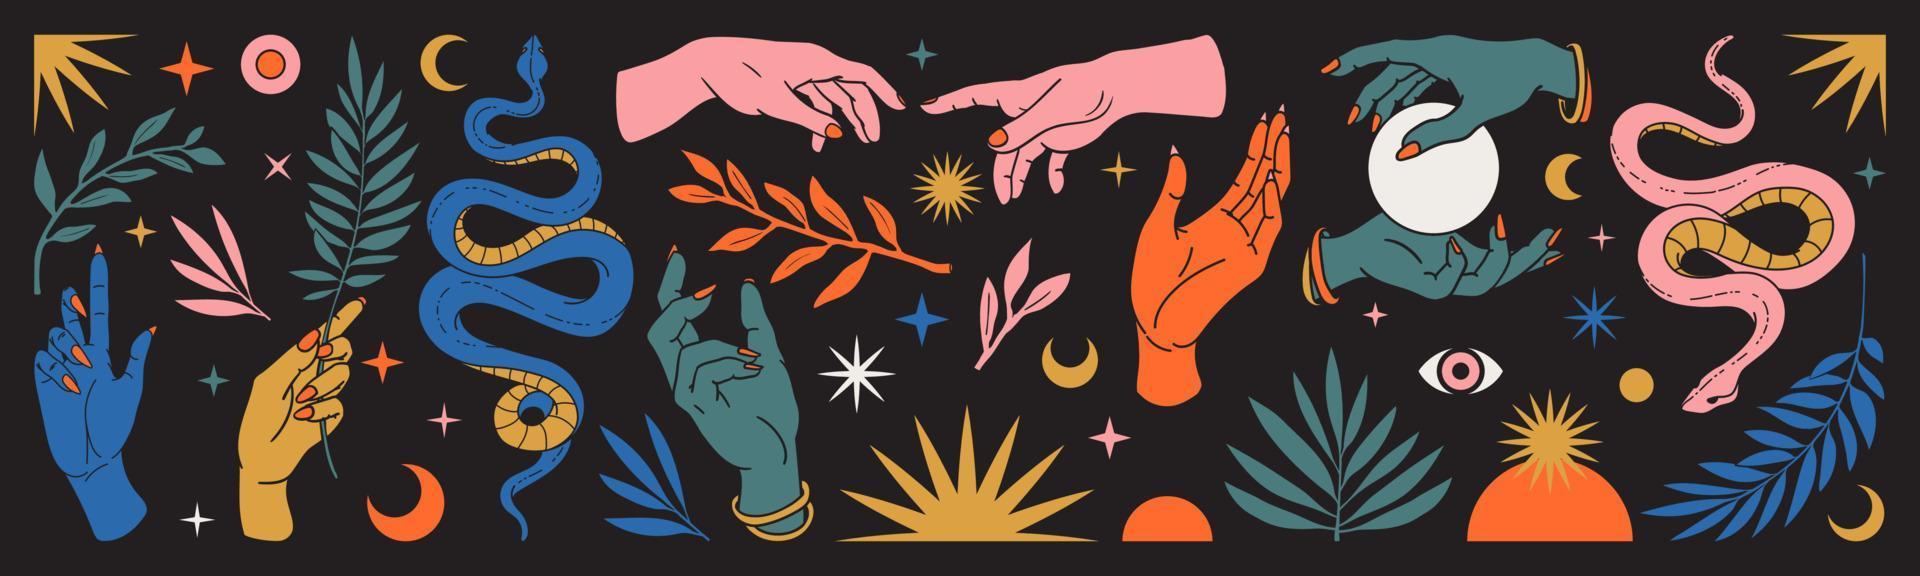 conjunto místico abstrato com mãos, cobras, lua, sol, magia, folhas, elementos florais no estilo celestial boêmio da moda. vetor